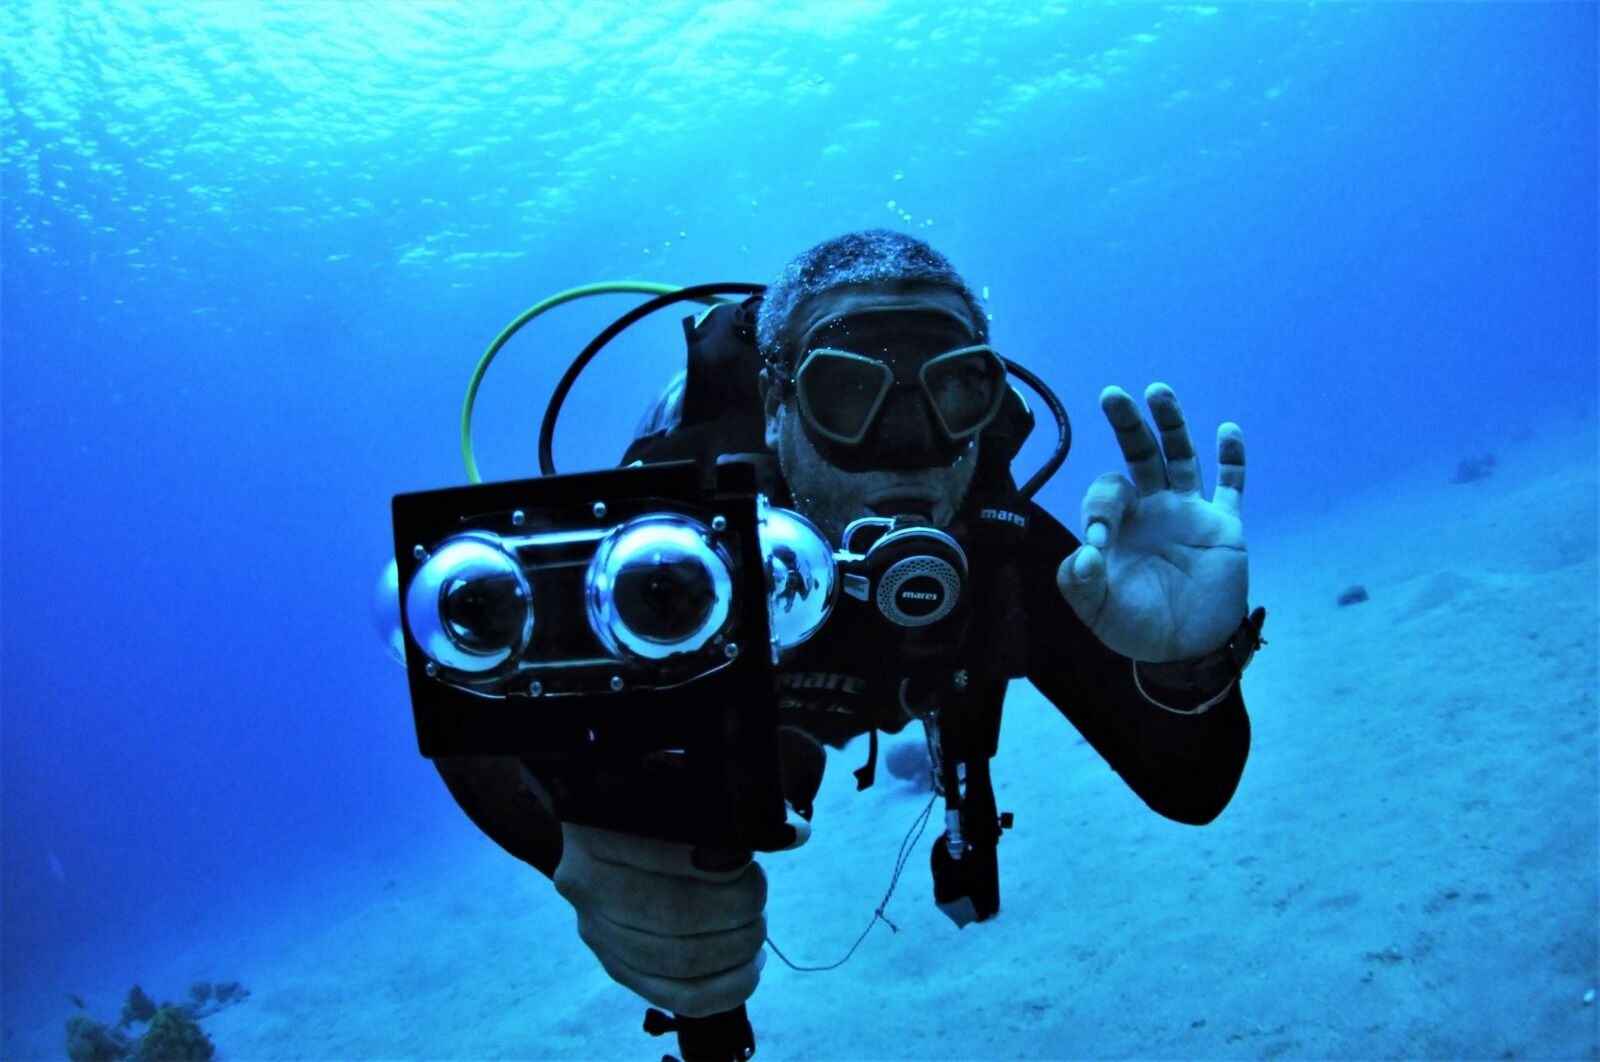 5 กล้องวิดิโอสำหรับถ่ายใต้น้ำ คุณภาพดี ช่วยบันทึกความทรงจำของการผจญภัยใต้บาดาล ! 6